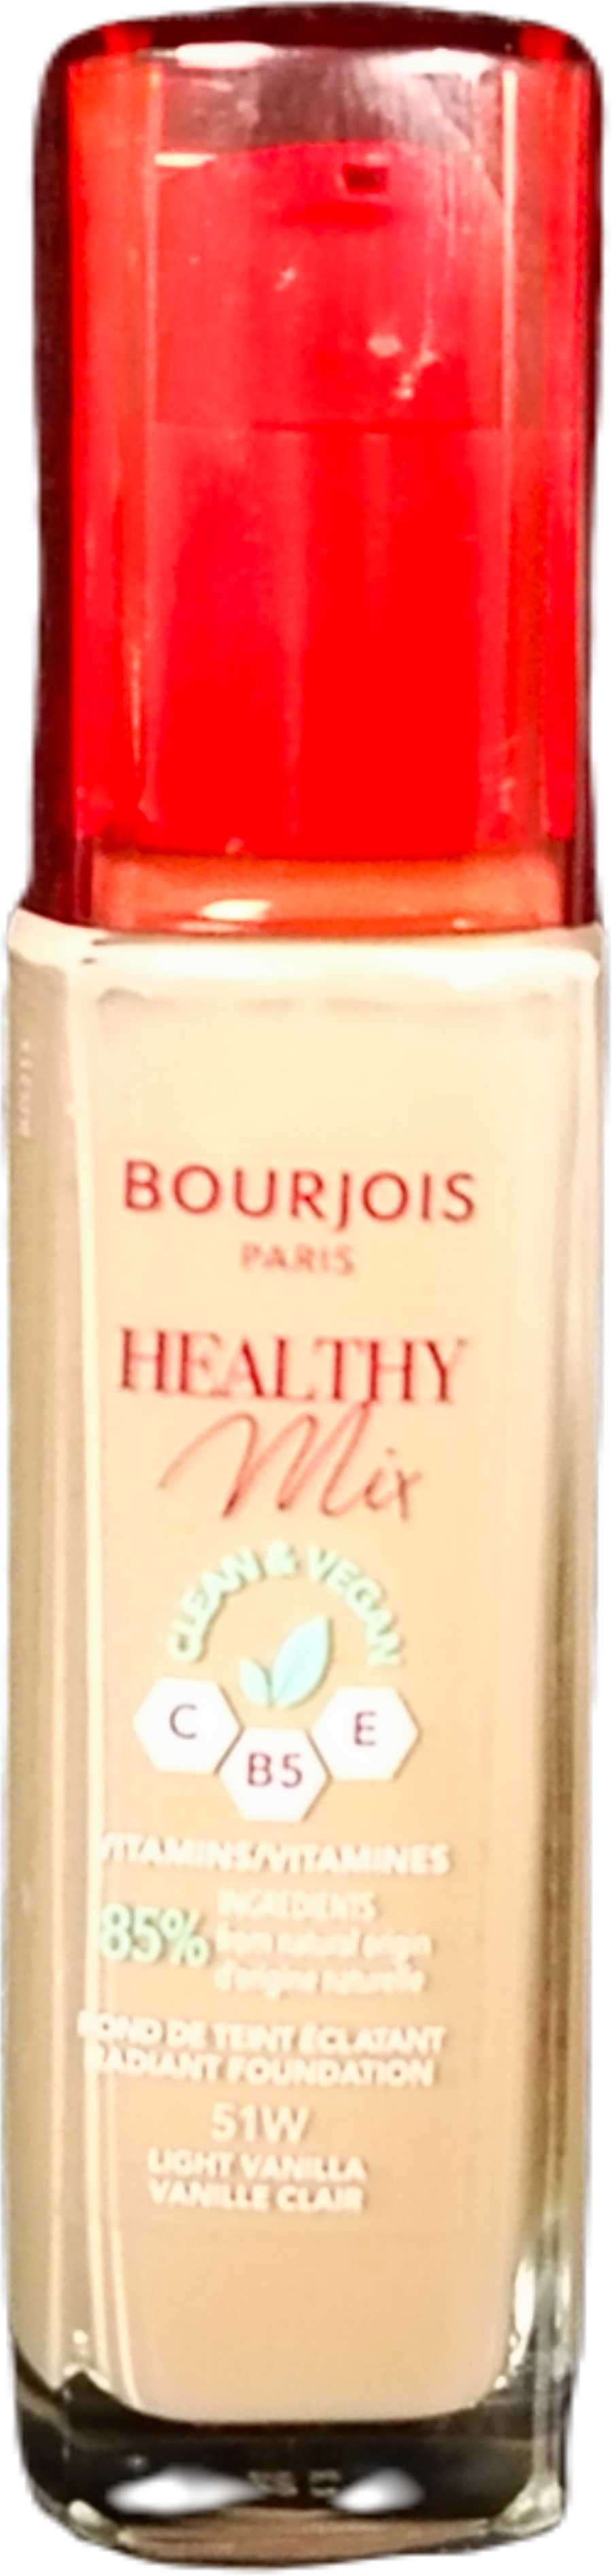 Podkład Bourjois Healthy Mix 51W